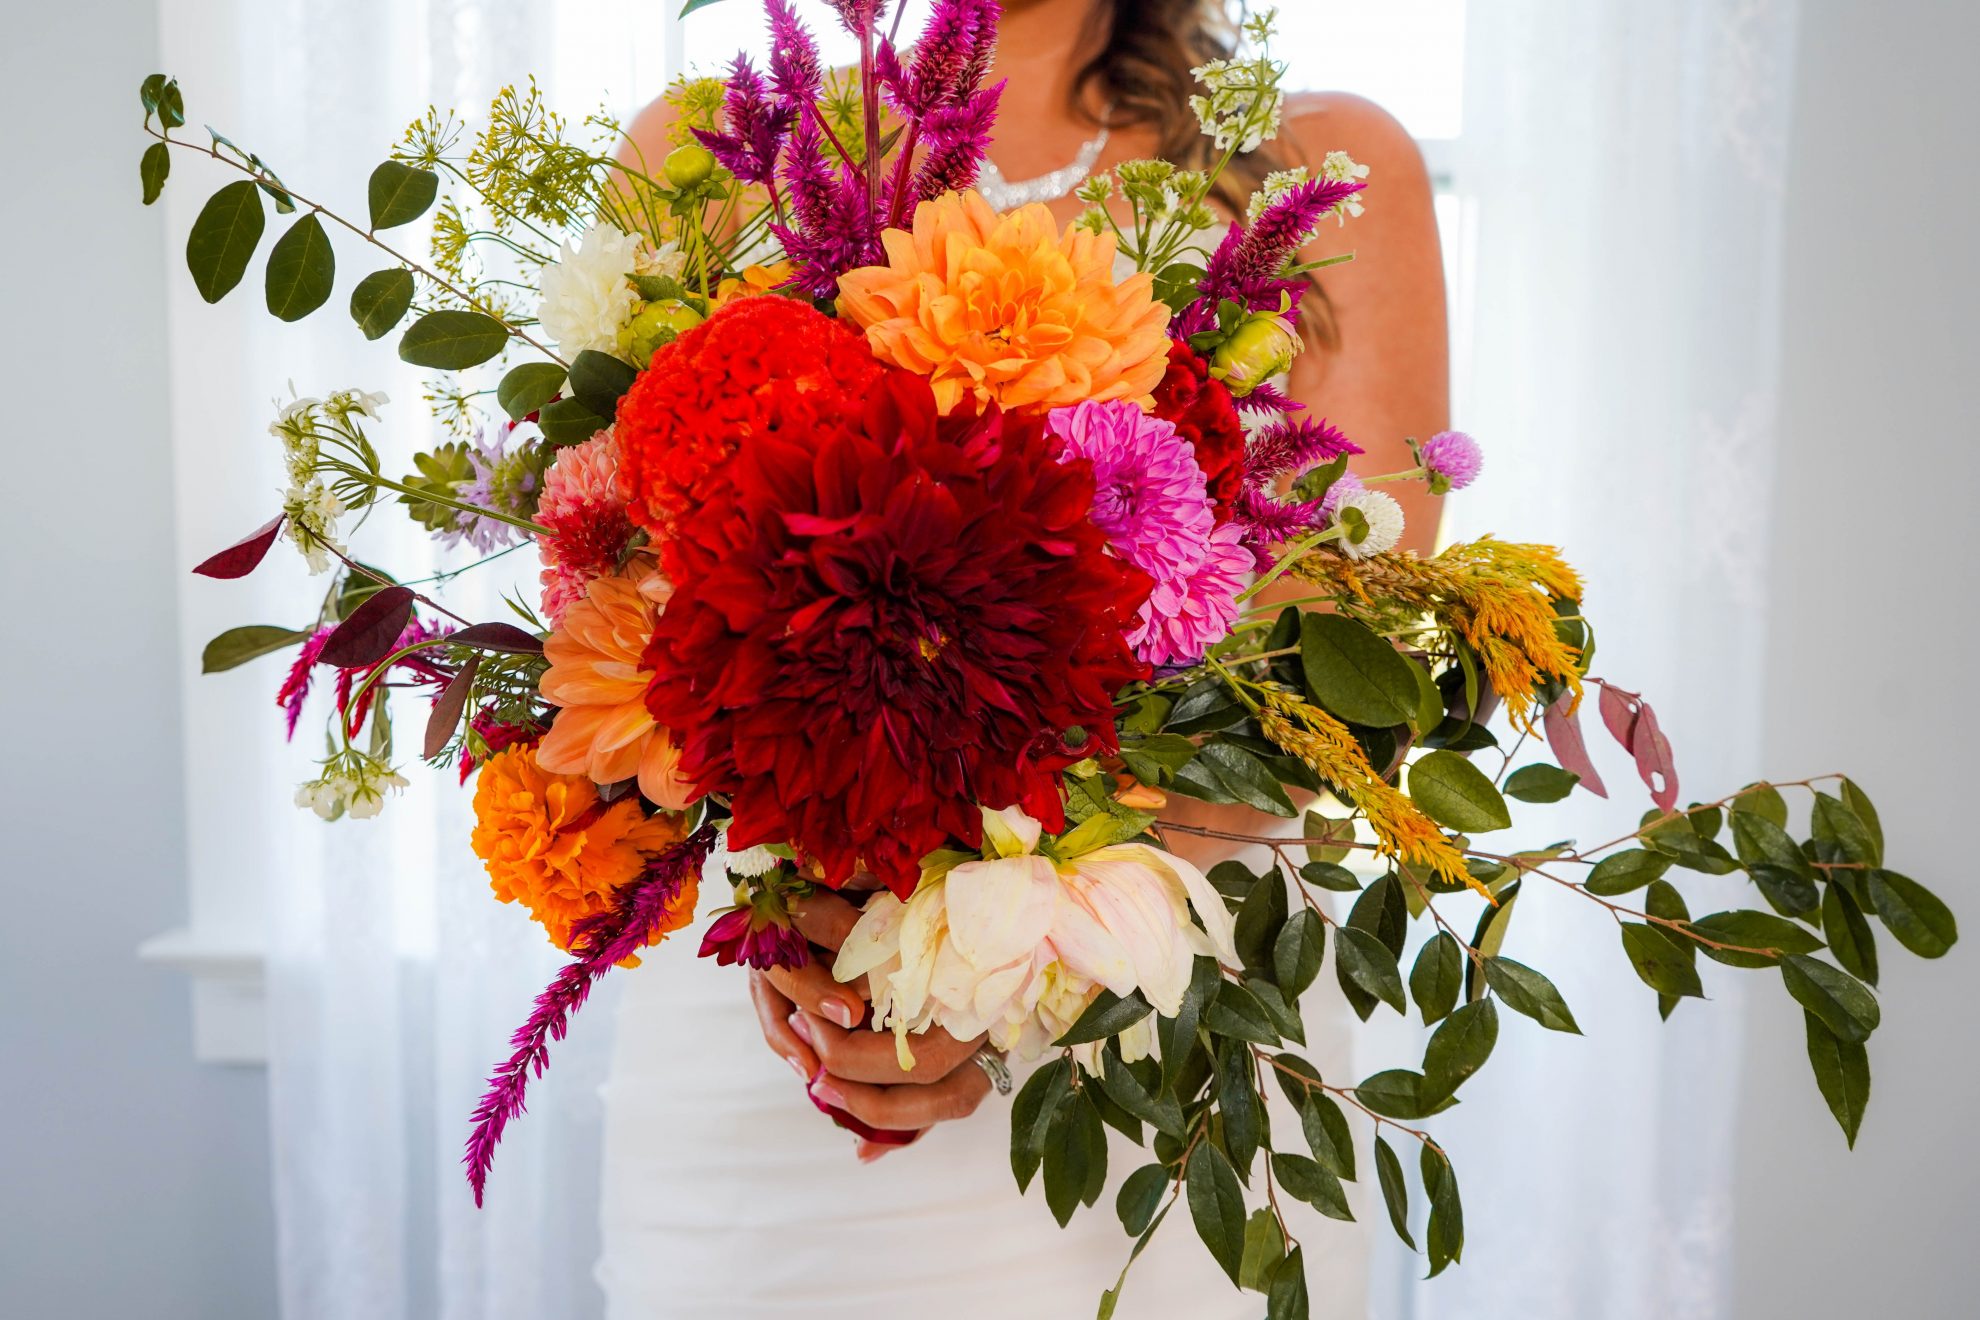 bride flowers